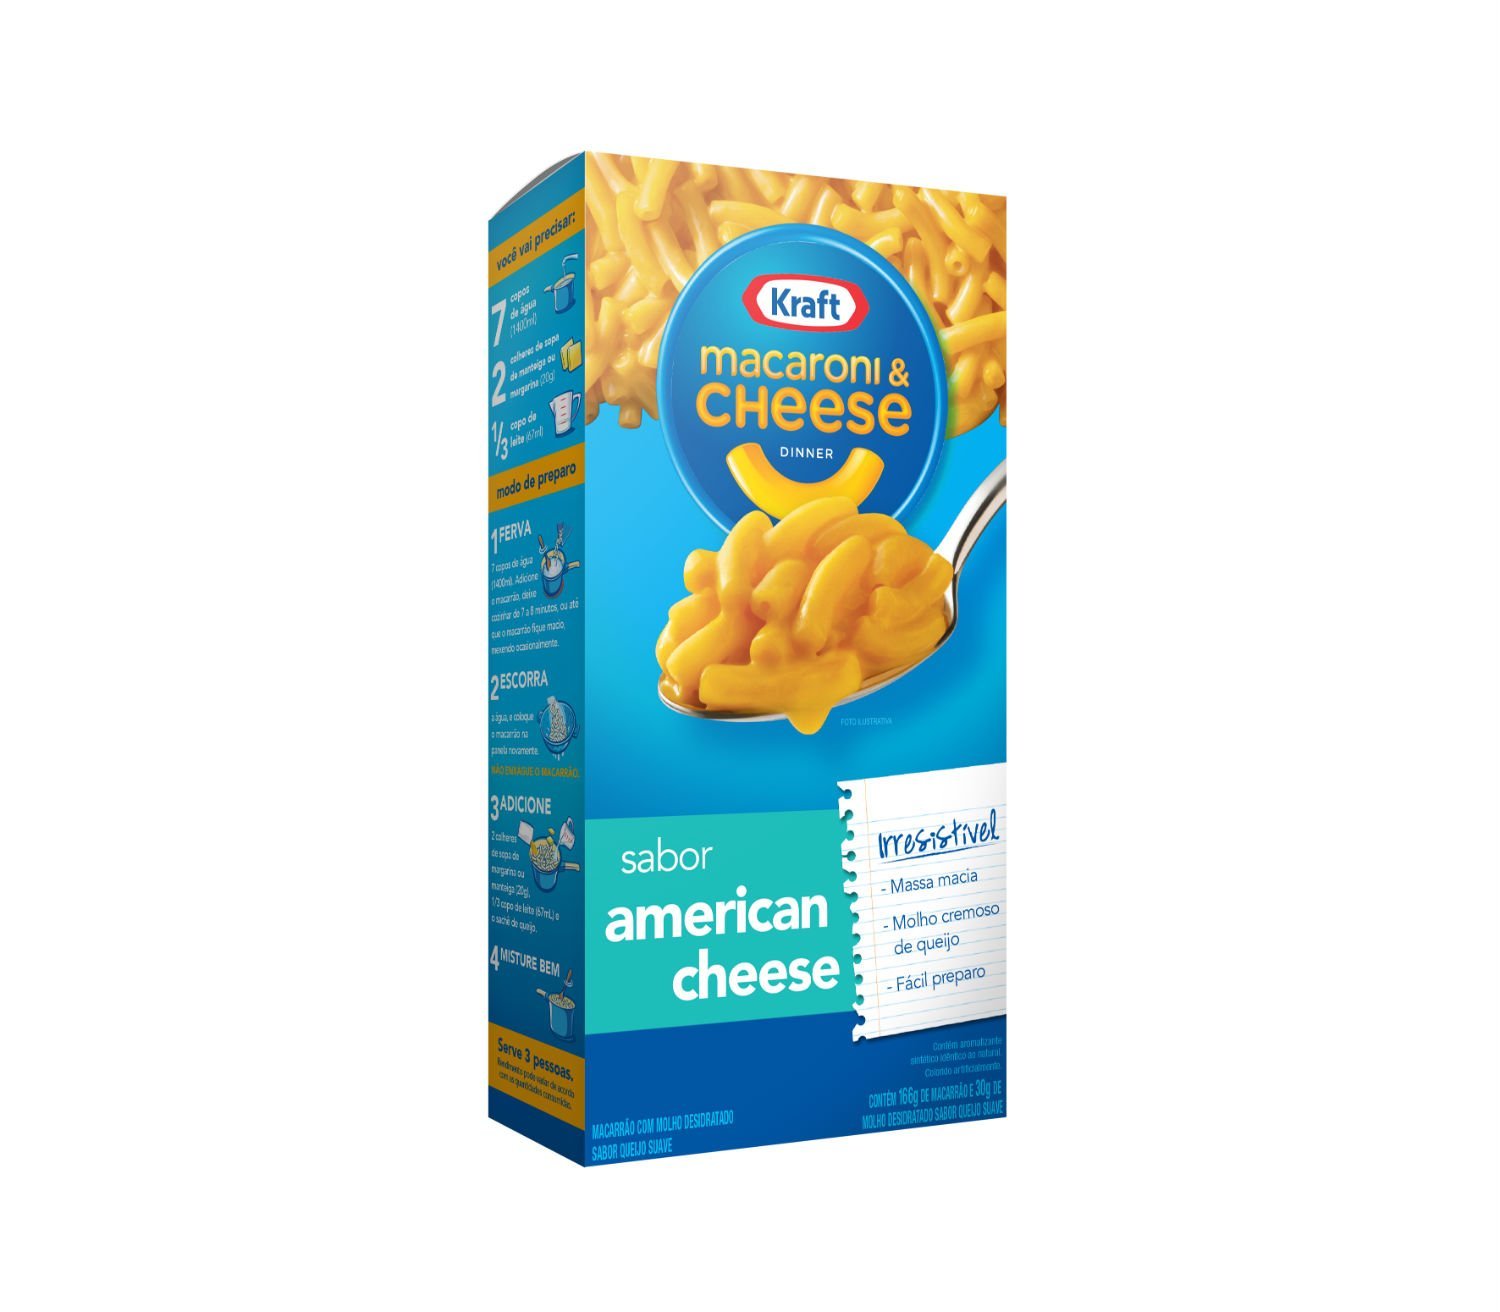 Mac&Cheese: famoso macarrão com queijo da Kraft chega ao Brasil